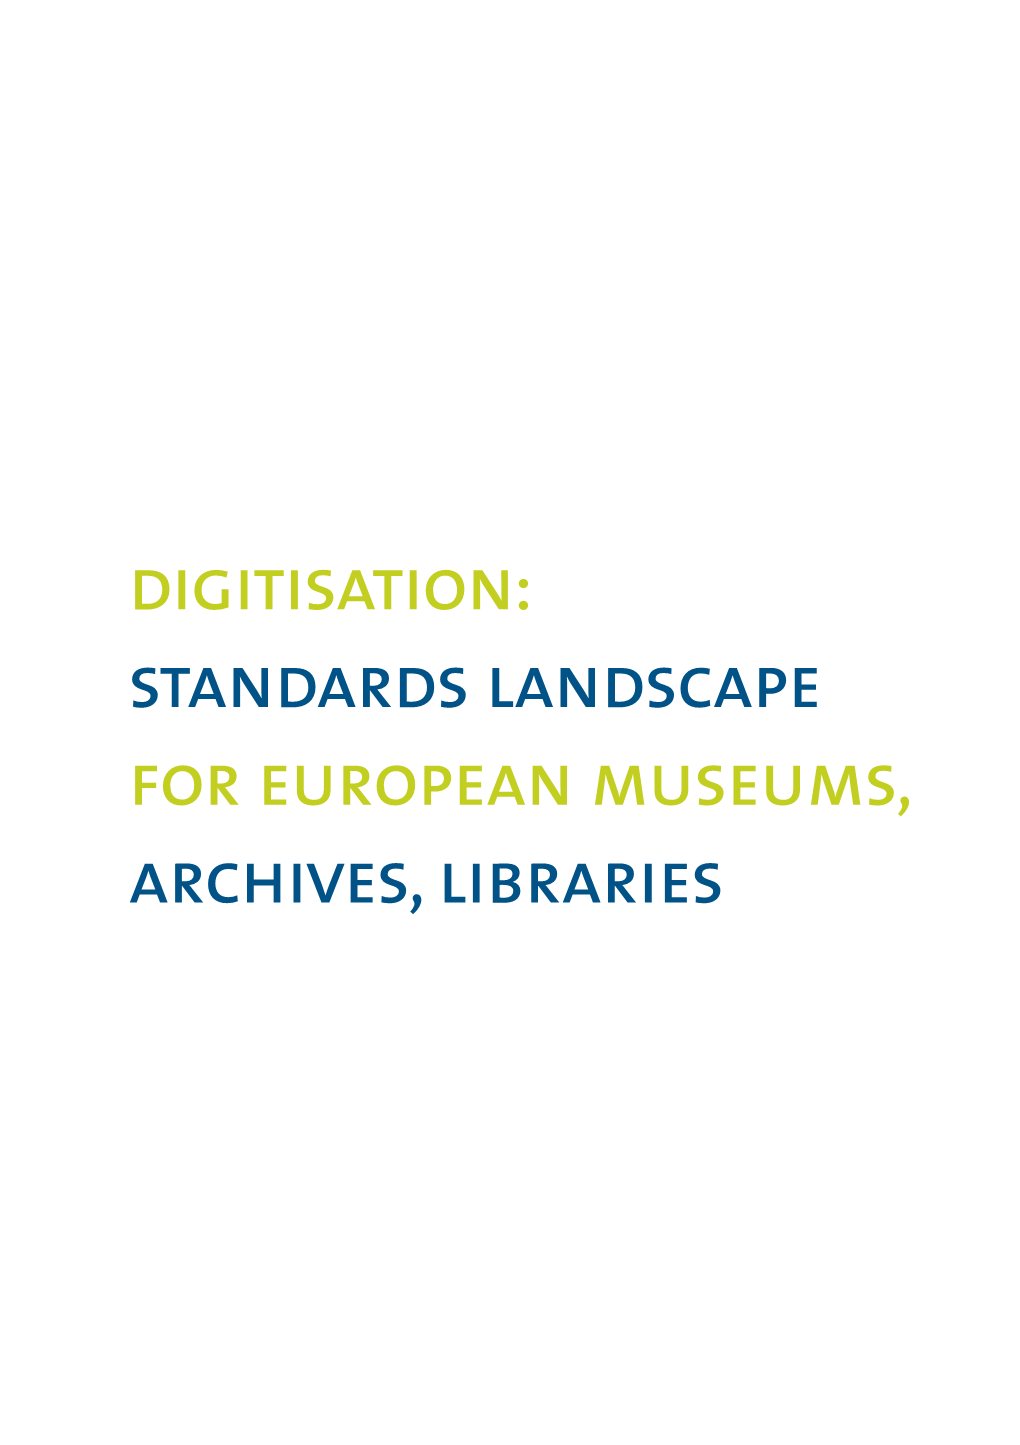 Standards Landscape for European Museums, Archives, Libraries Digitisation: Standards Landscape for European Museums, Archives, Libraries